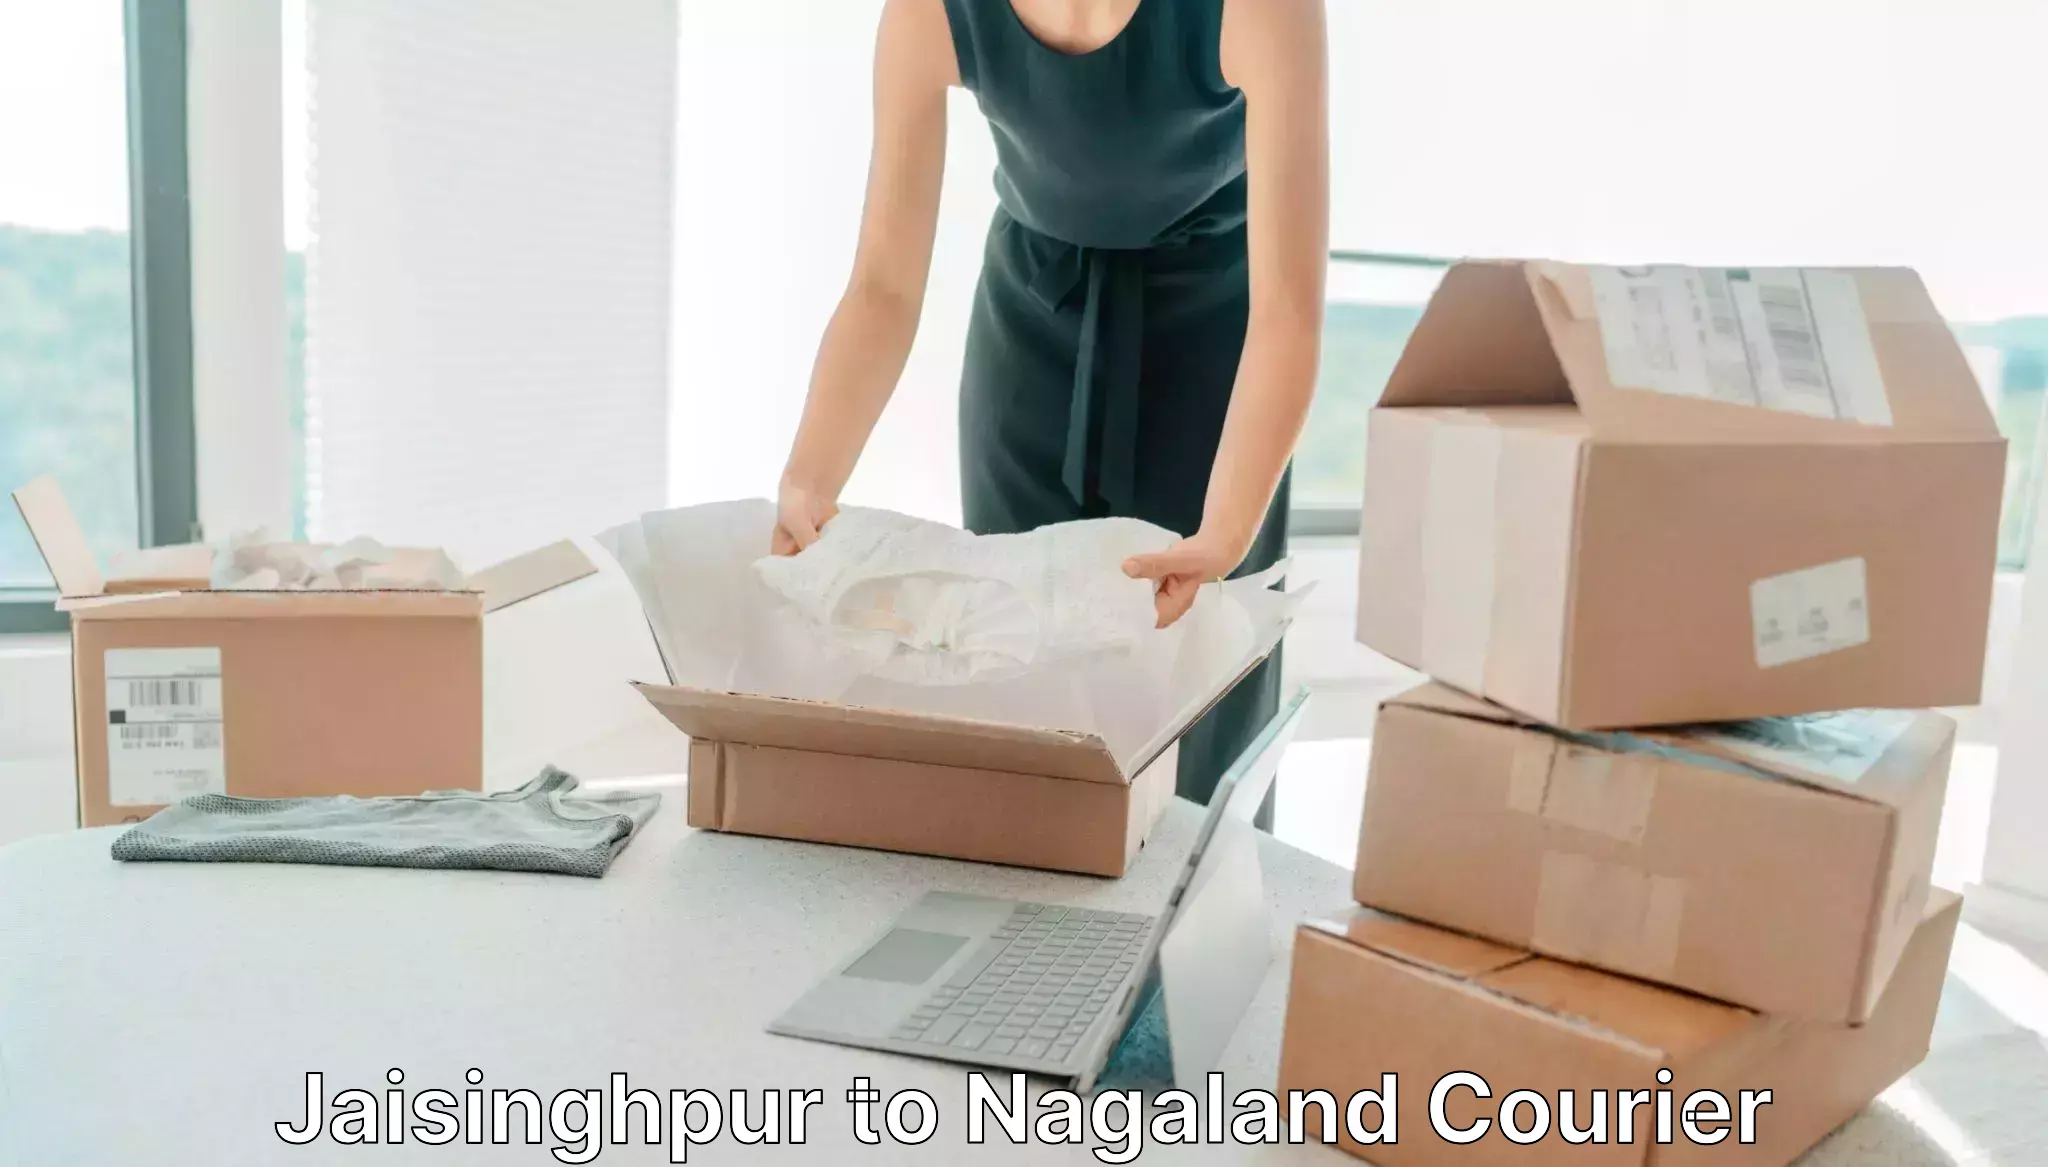 24-hour courier services Jaisinghpur to Dimapur